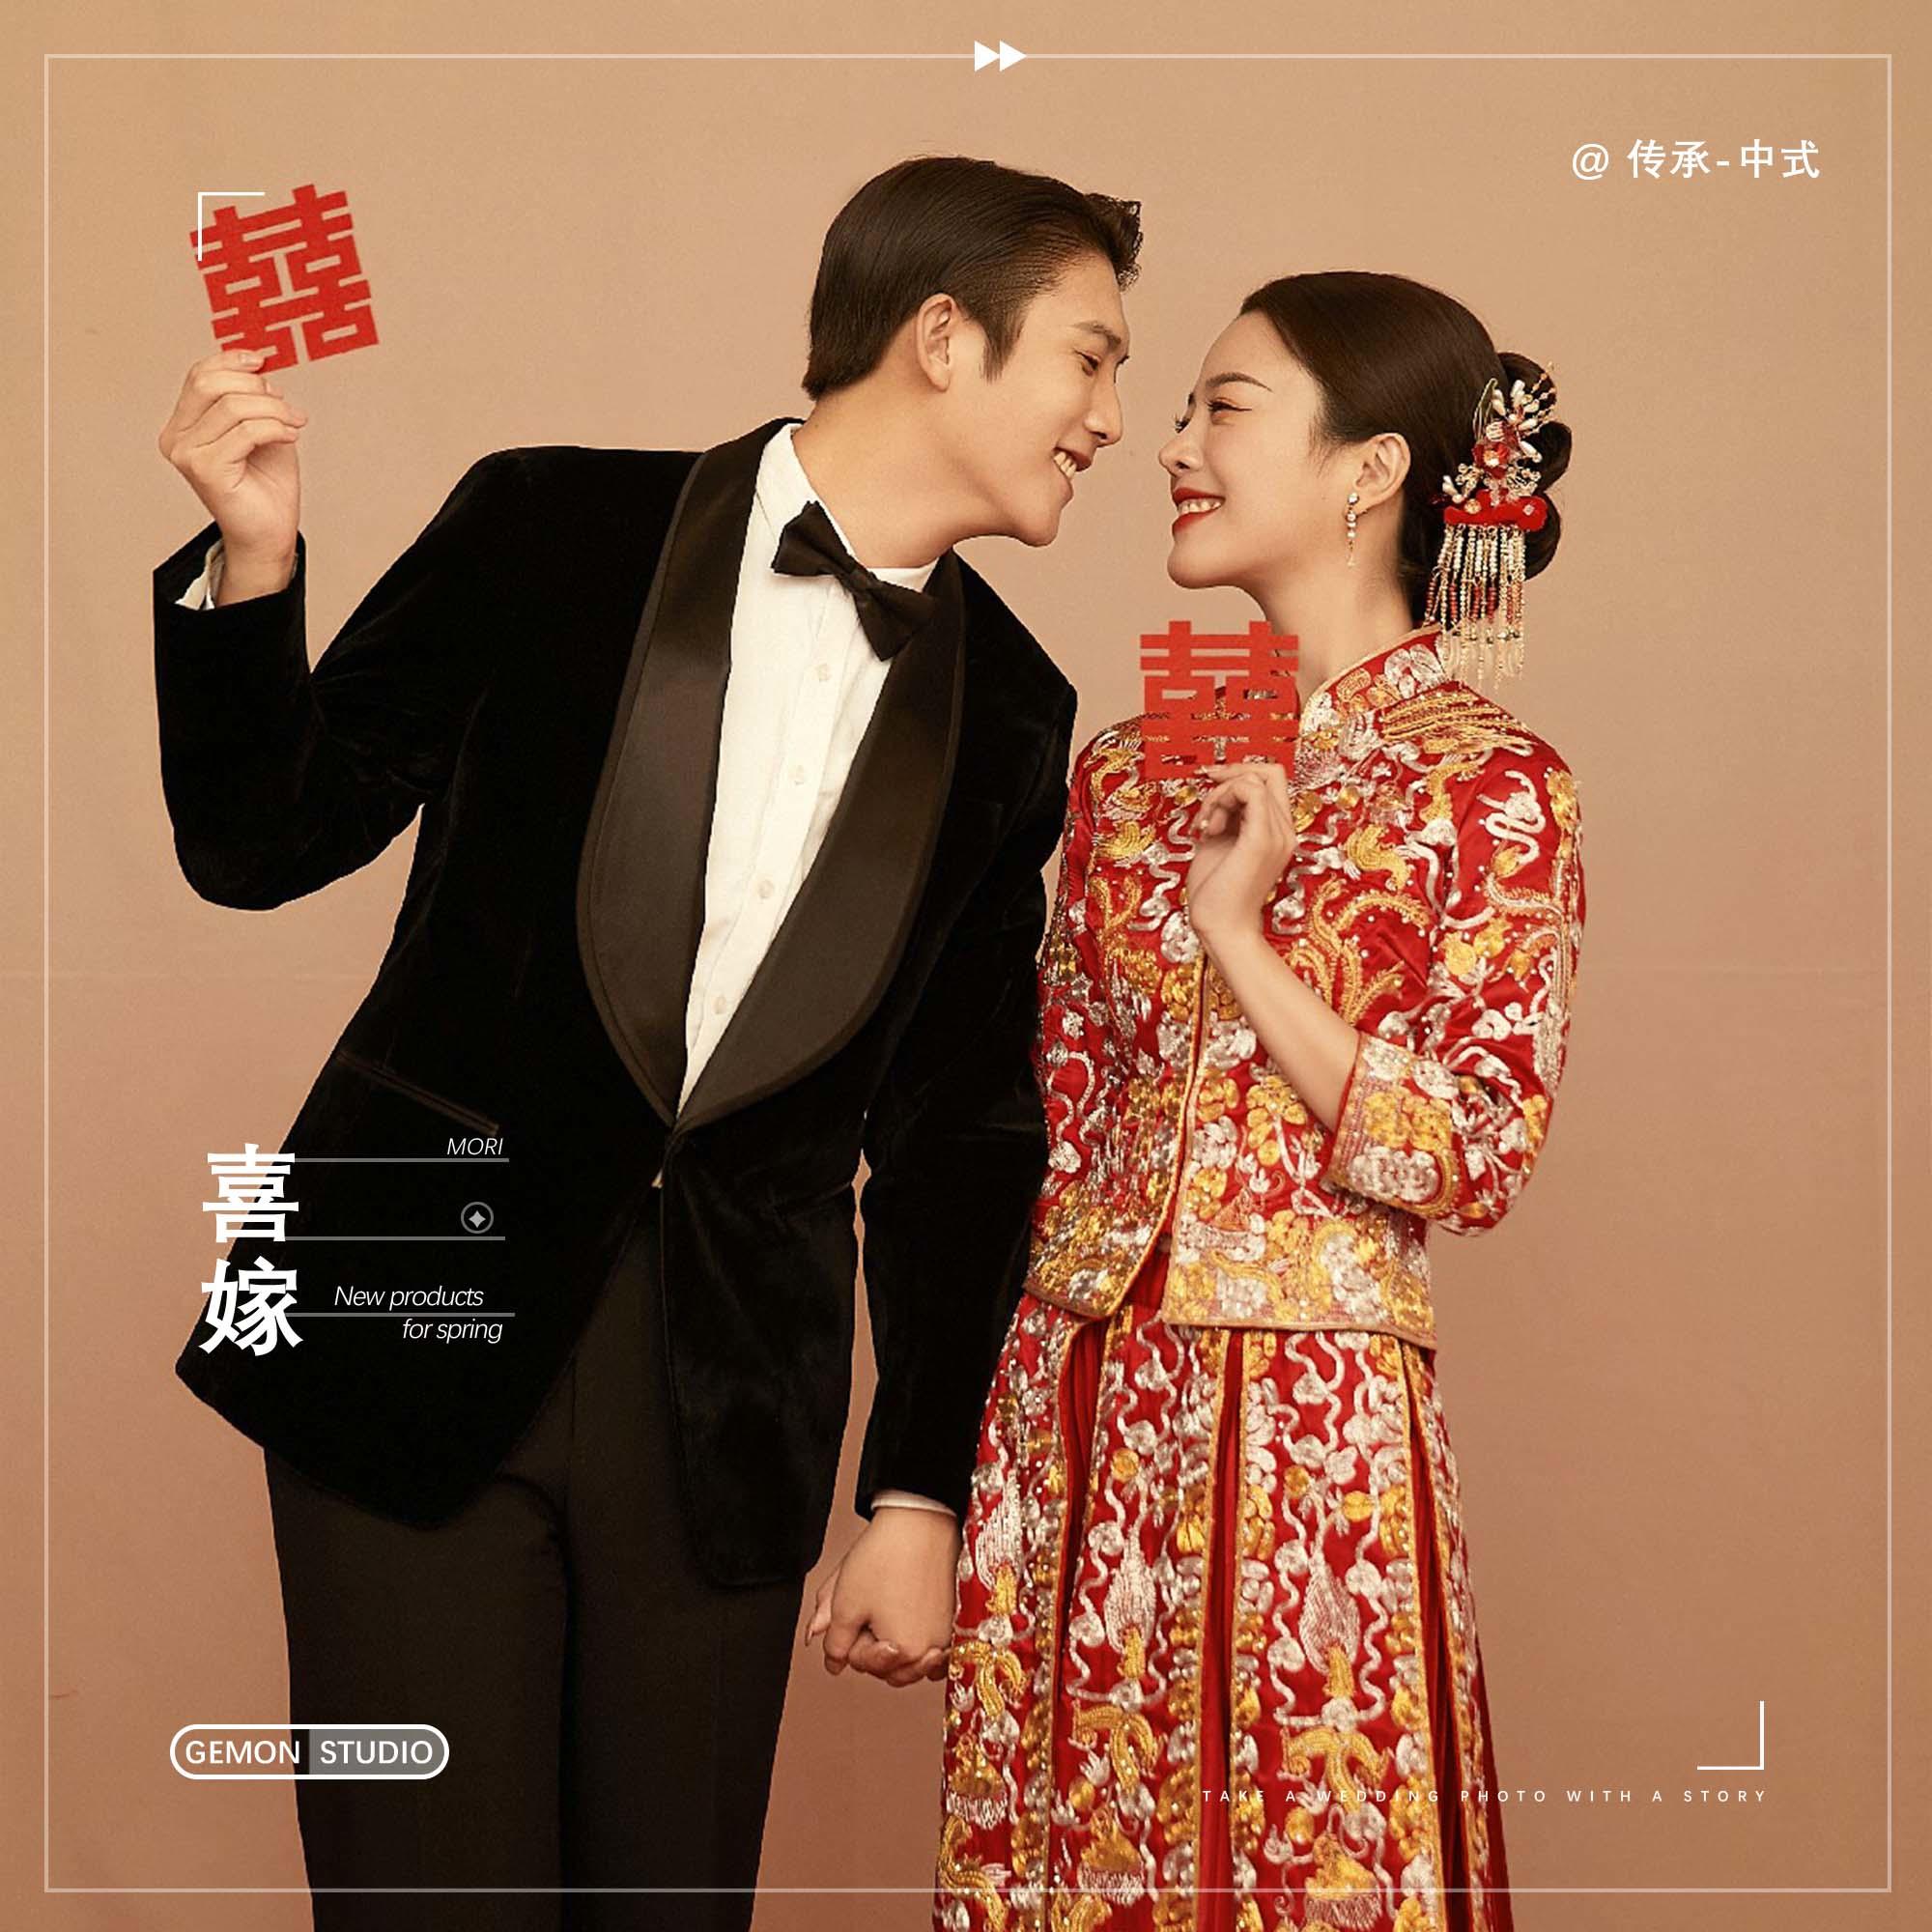 性价比推荐《东方艺术》中式喜嫁-秀禾-汉服婚纱照